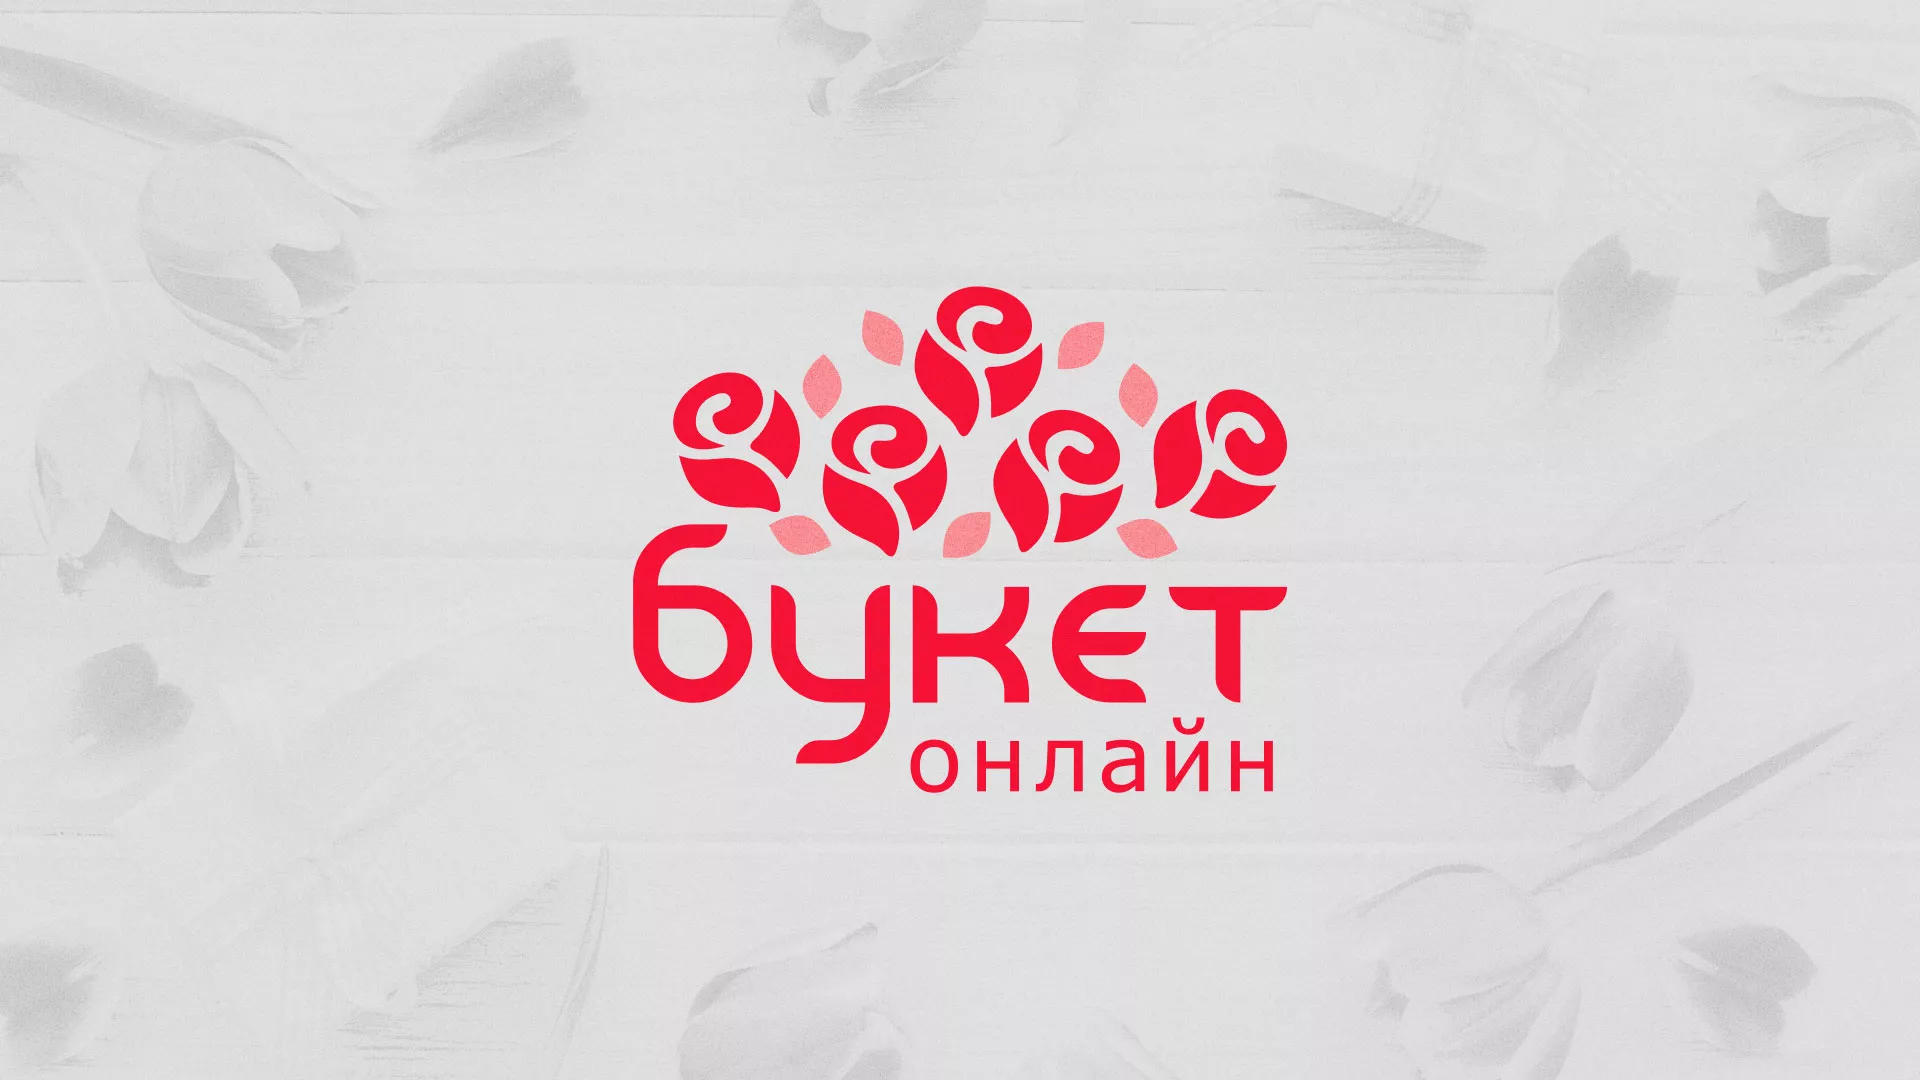 Создание интернет-магазина «Букет-онлайн» по цветам в Гусь-Хрустальном